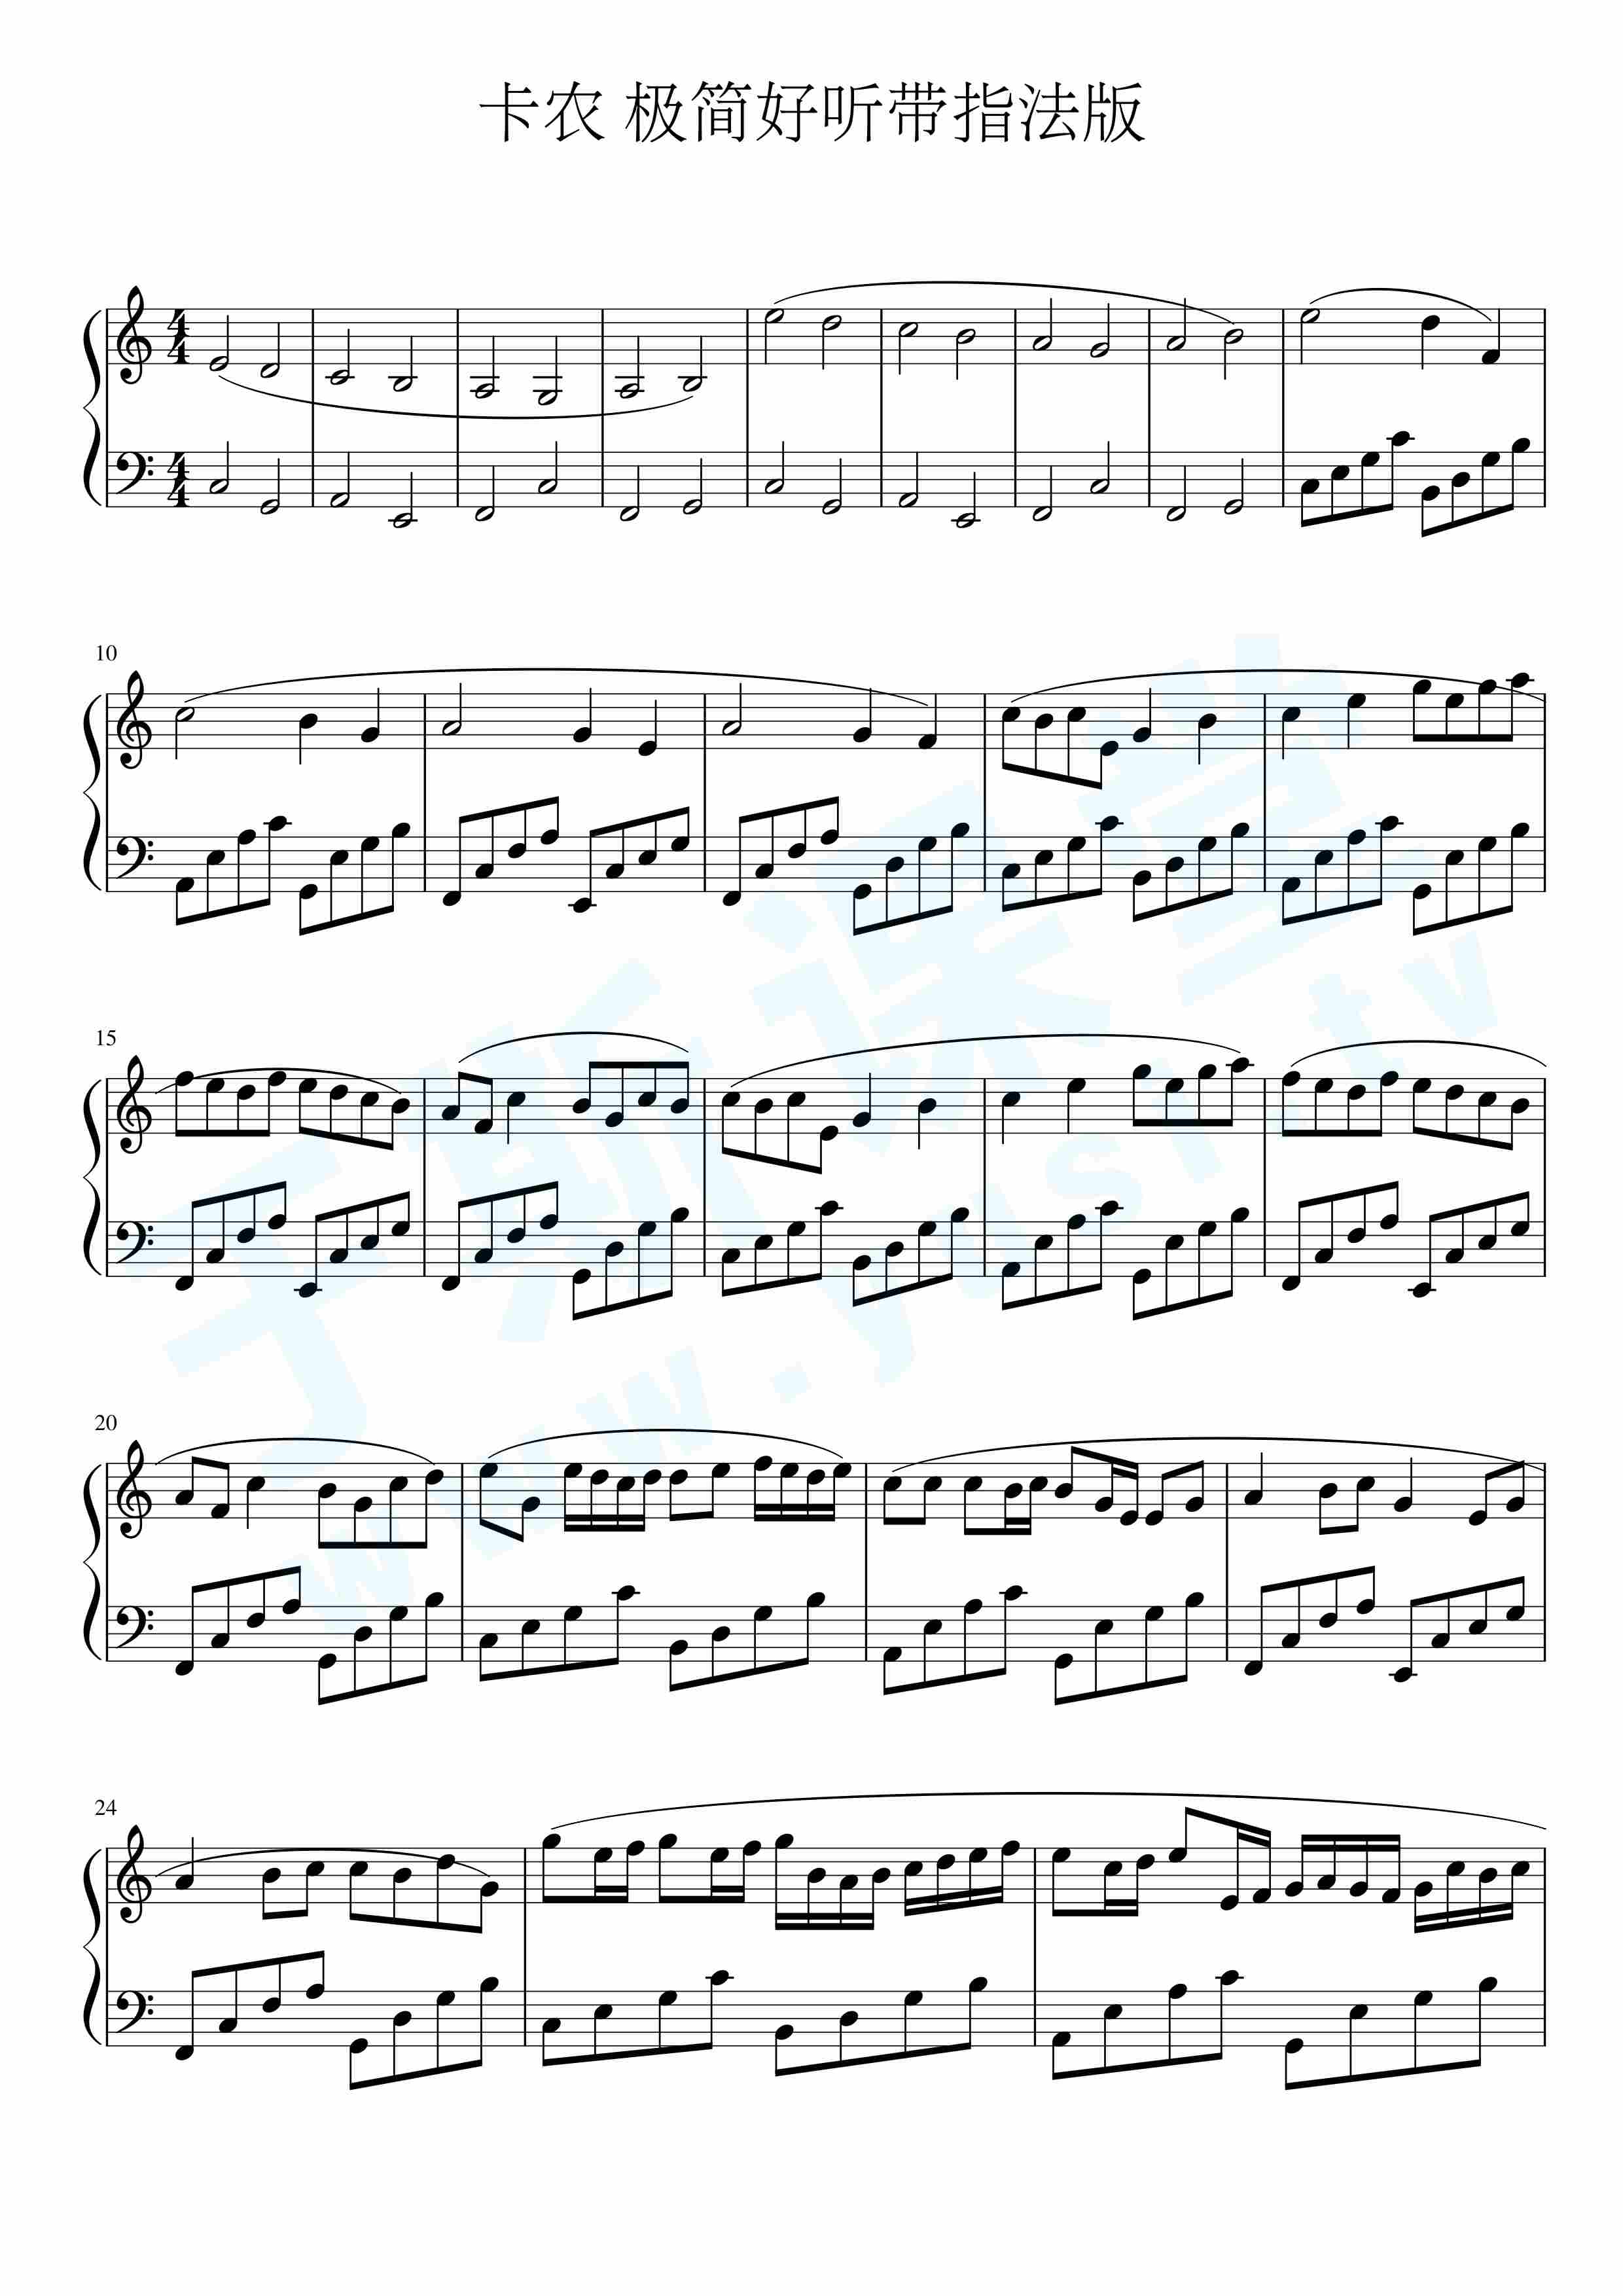 卡农 极简版带指法钢琴曲谱,于斯课堂精心出品